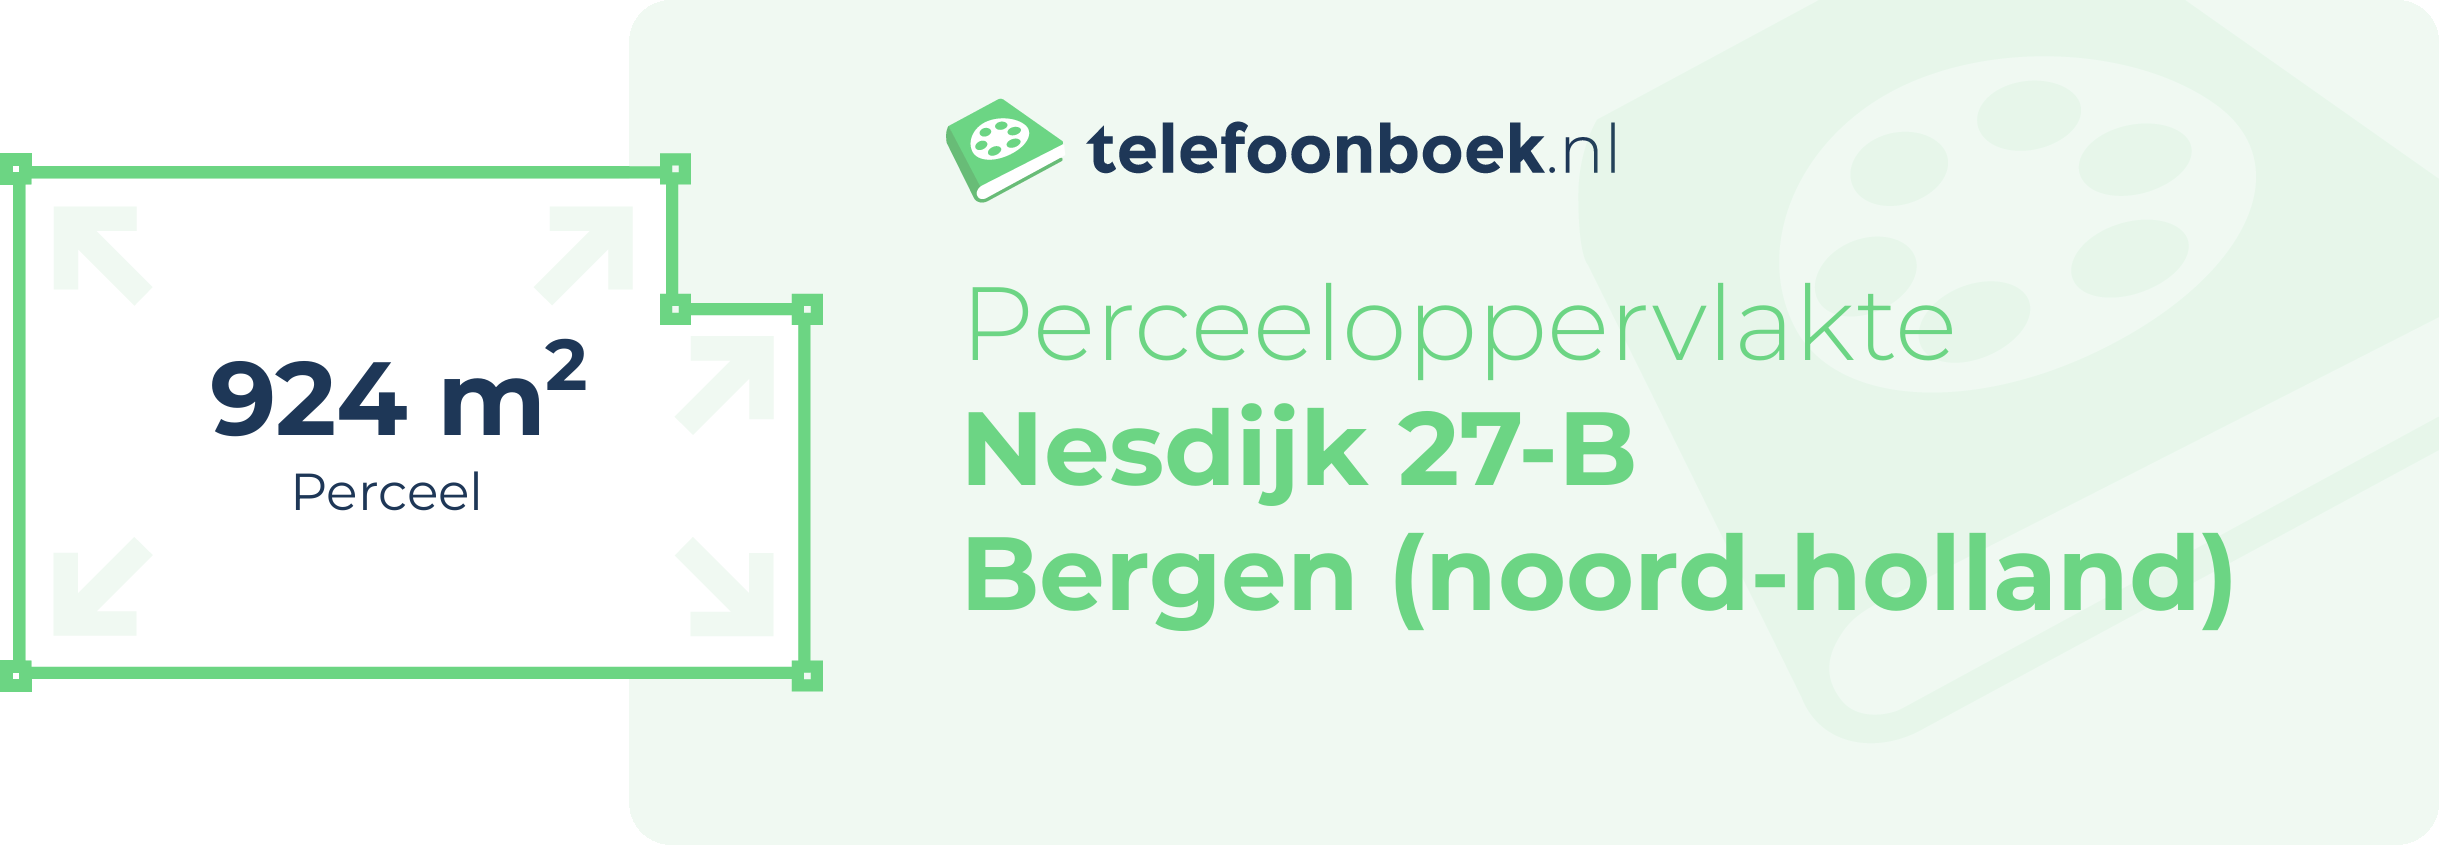 Perceeloppervlakte Nesdijk 27-B Bergen (Noord-Holland)